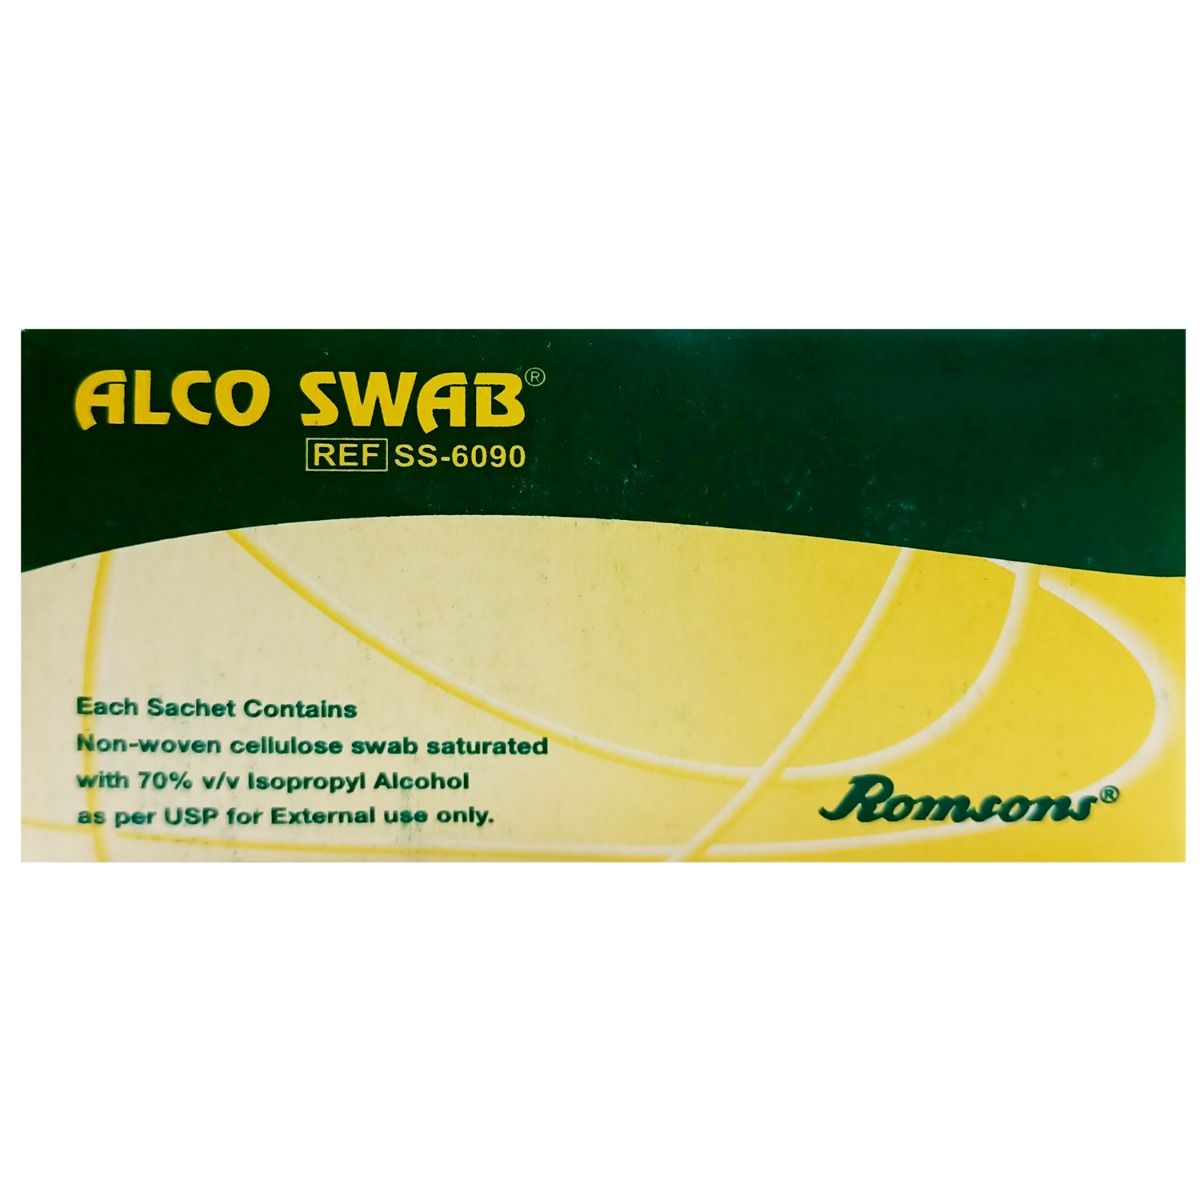 Buy Romsons Alco Swab Online